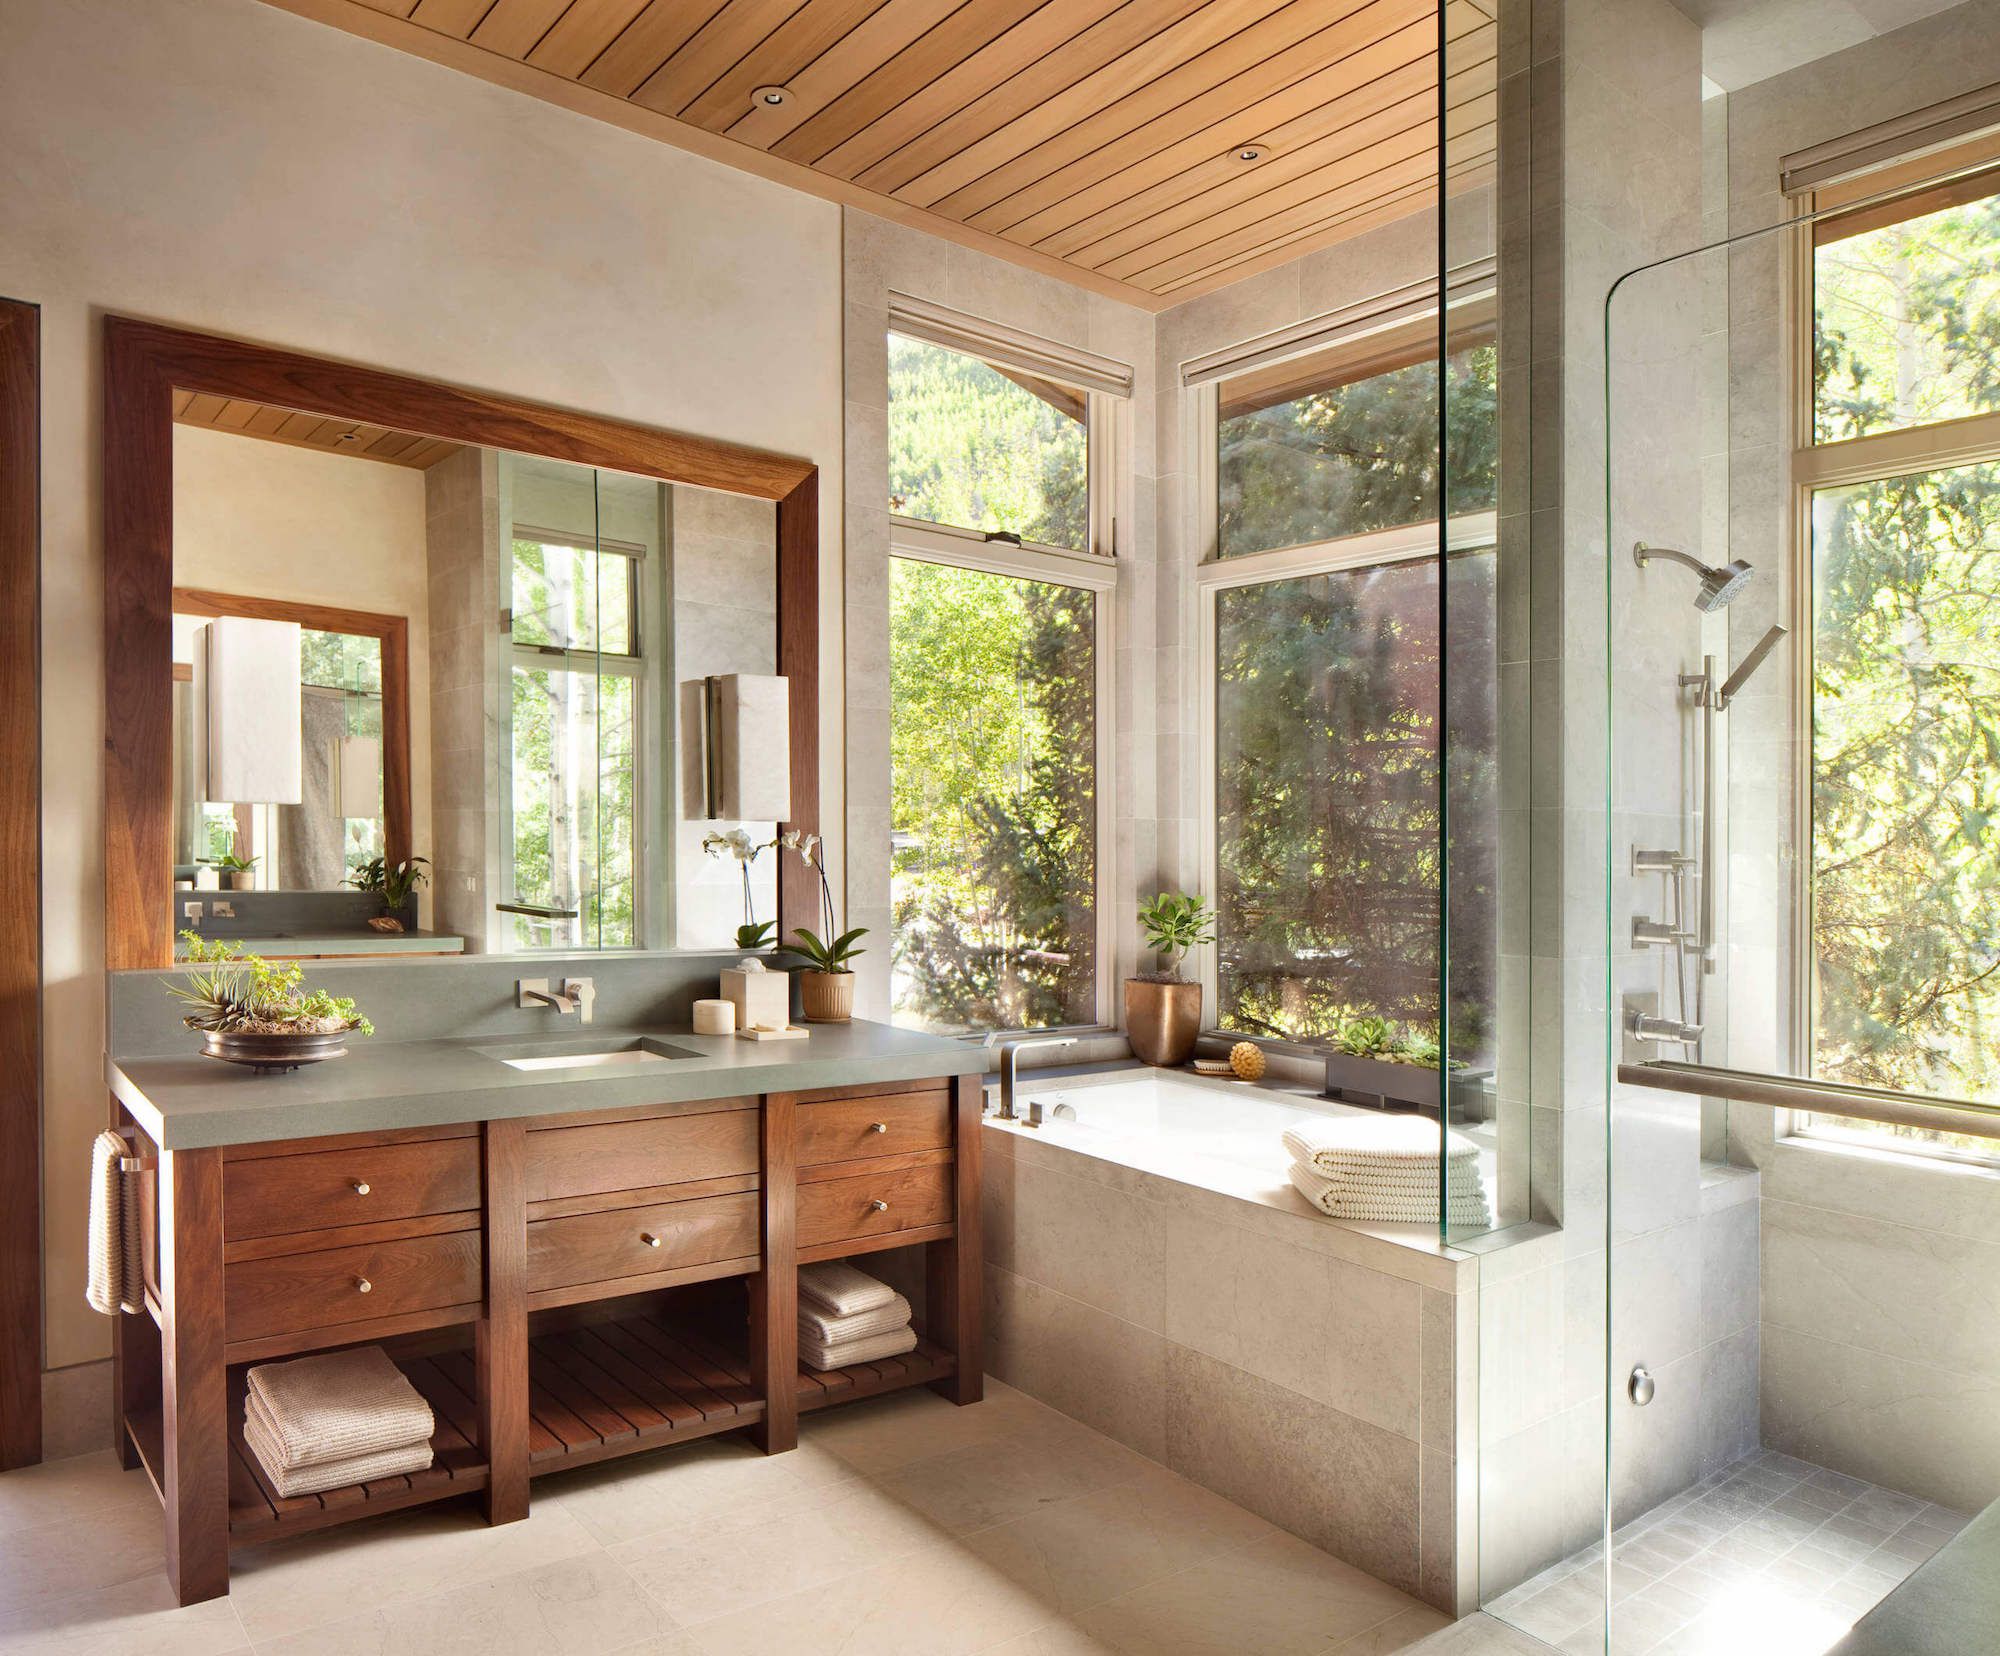 Ванна с большим окном. Ванная в деревенском стиле. Интерьер ванной с окном. Ванная с окном в частном доме. Дерево в интерьере ванной комнаты.